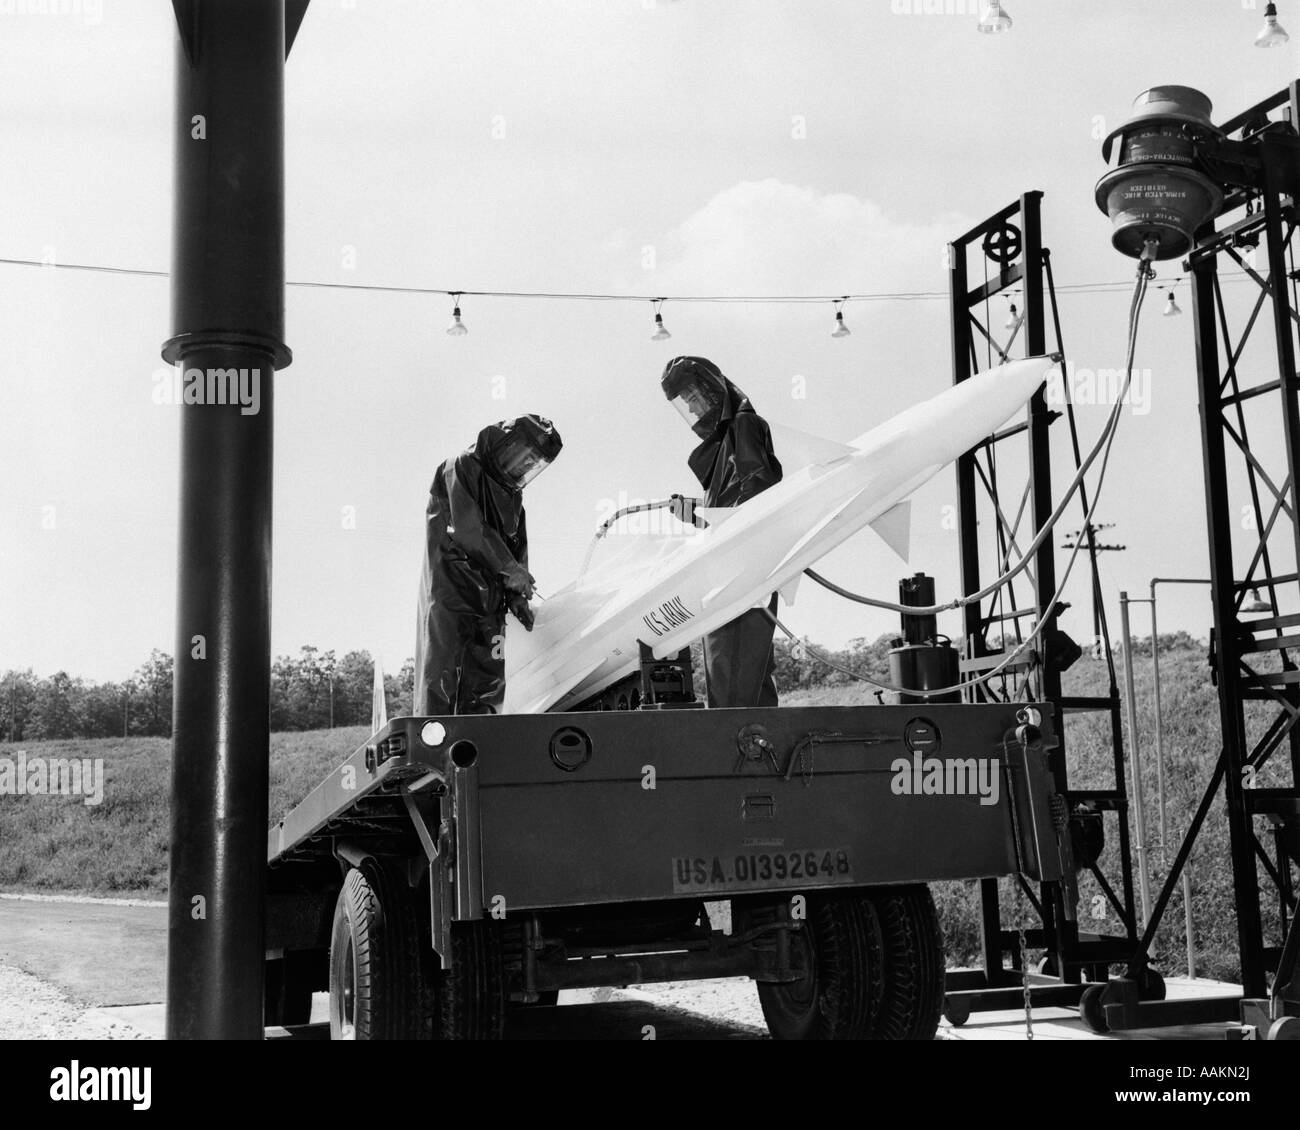 1960 el ejército de EE.UU. misiles guiados de NIKE EN LAUNCH PAD está alimentado por combustible 2 HOMBRES EN ROPA RESISTENTE AL FUEGO Foto de stock